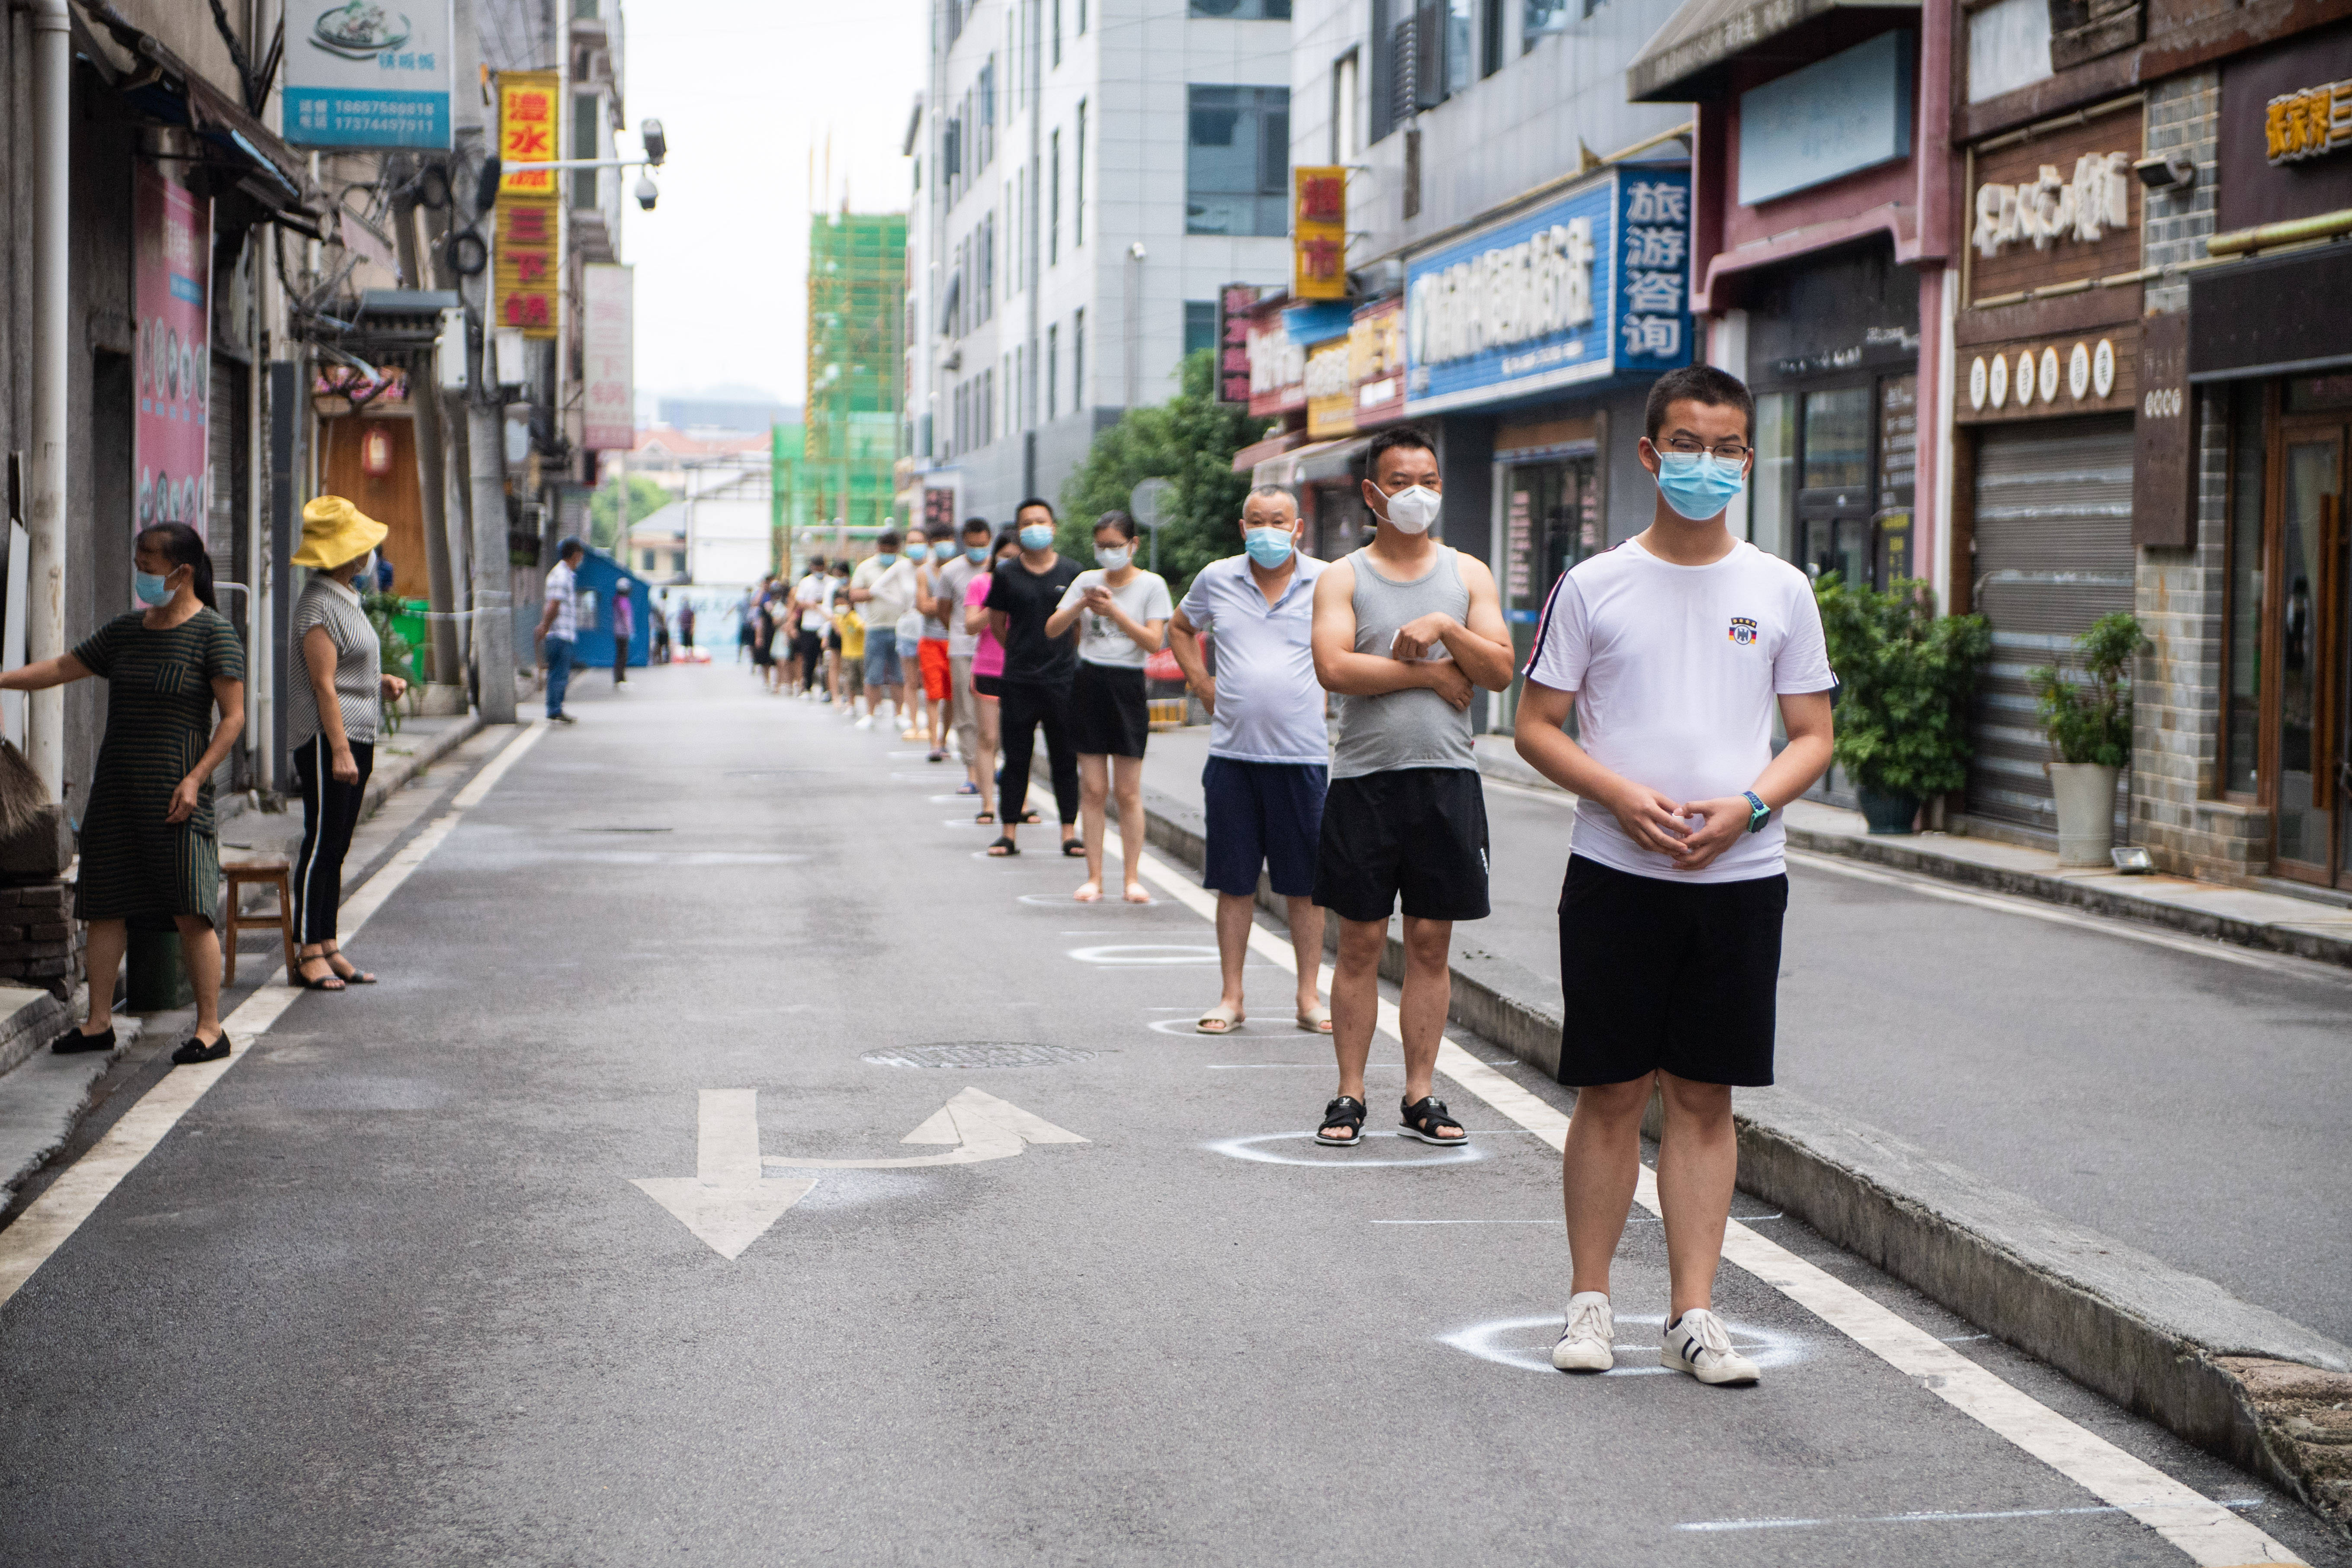 8月10日,在张家界市永定区官黎坪街道,居民排队等待做核酸检测